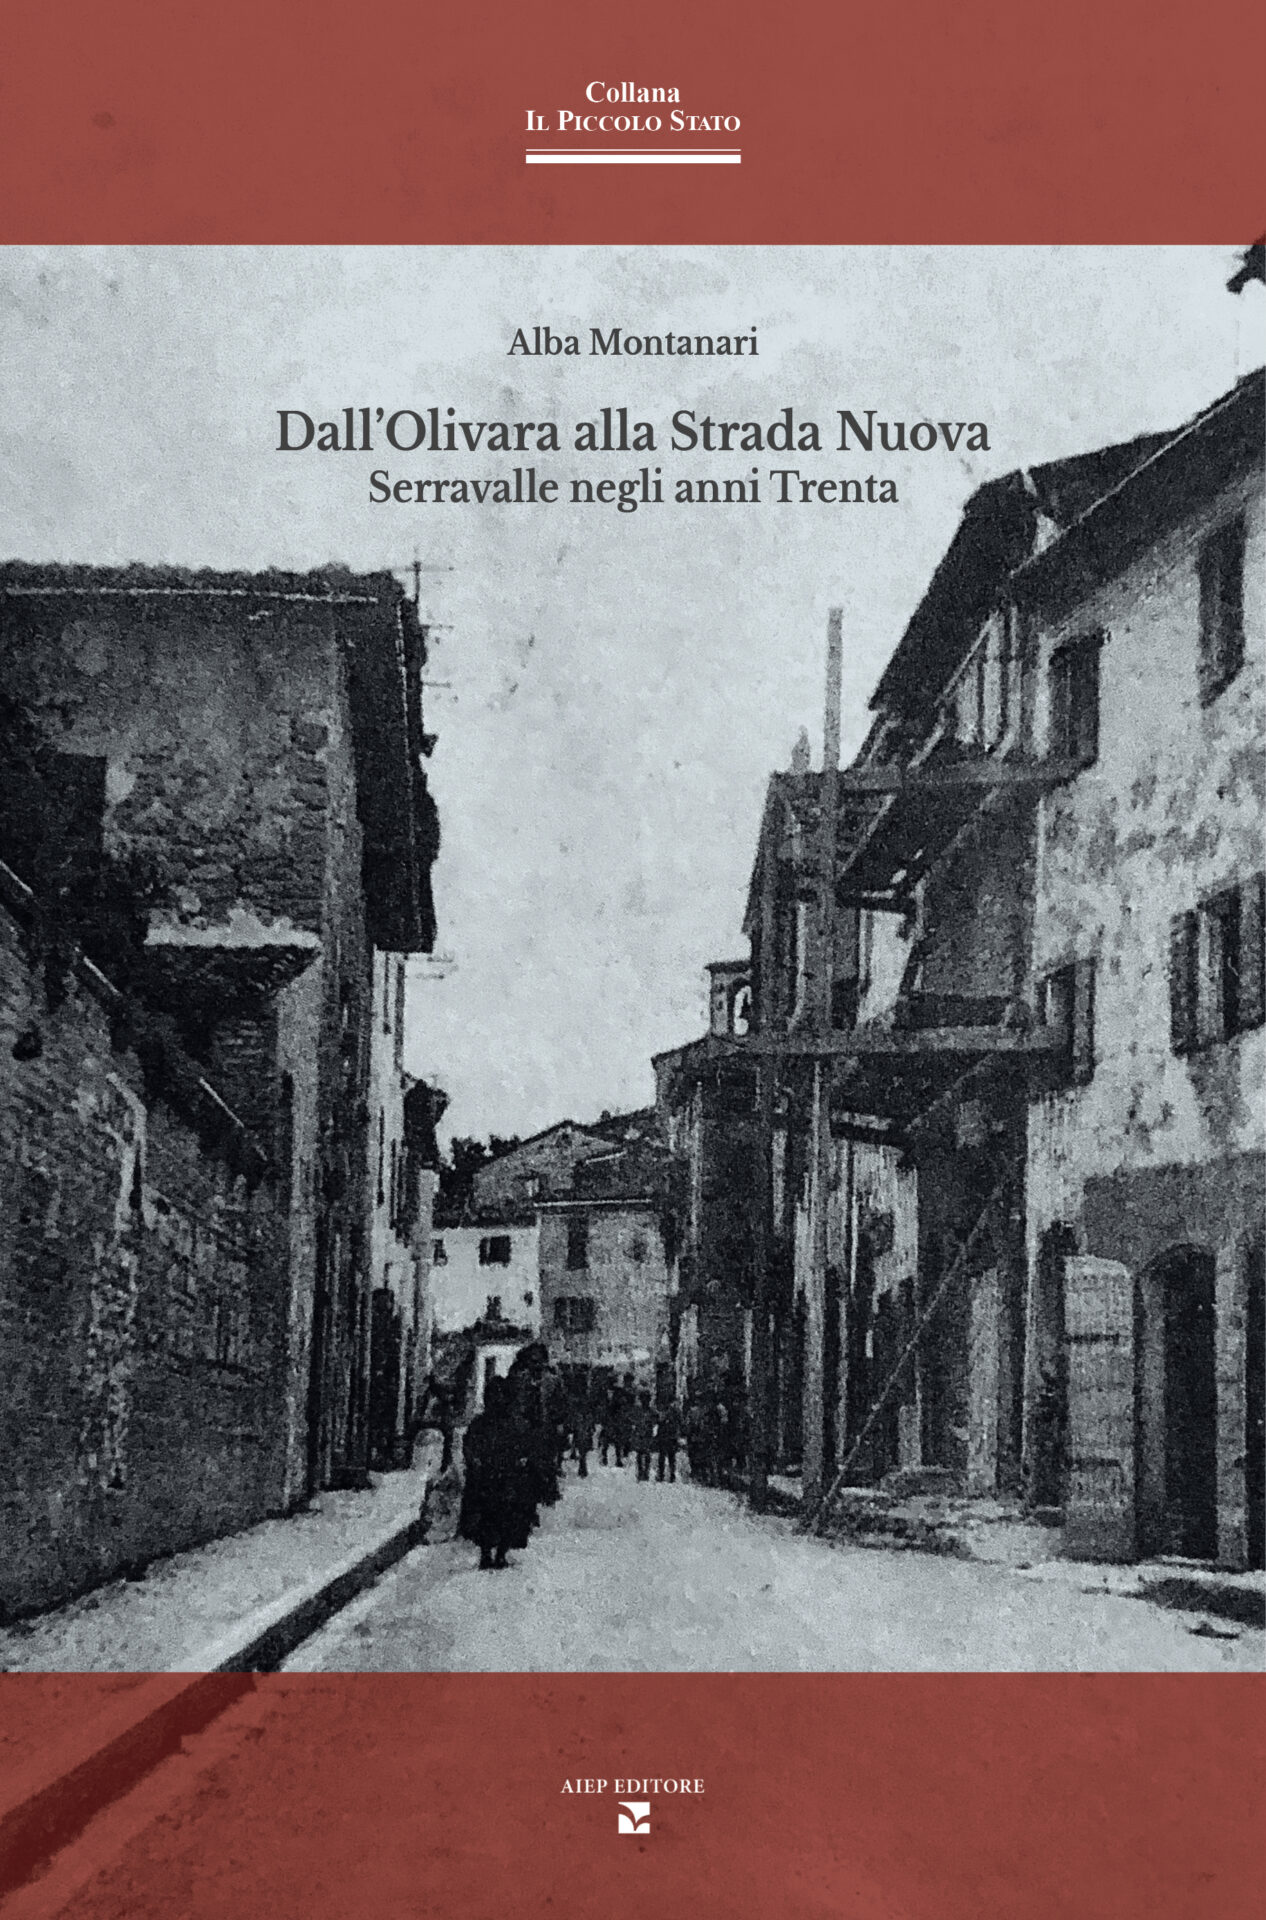 Copertina del libro Dall'Olivara alla Strada Nuova. Serravalle negli anni Trenta, con una fotografia della Strada Nuova